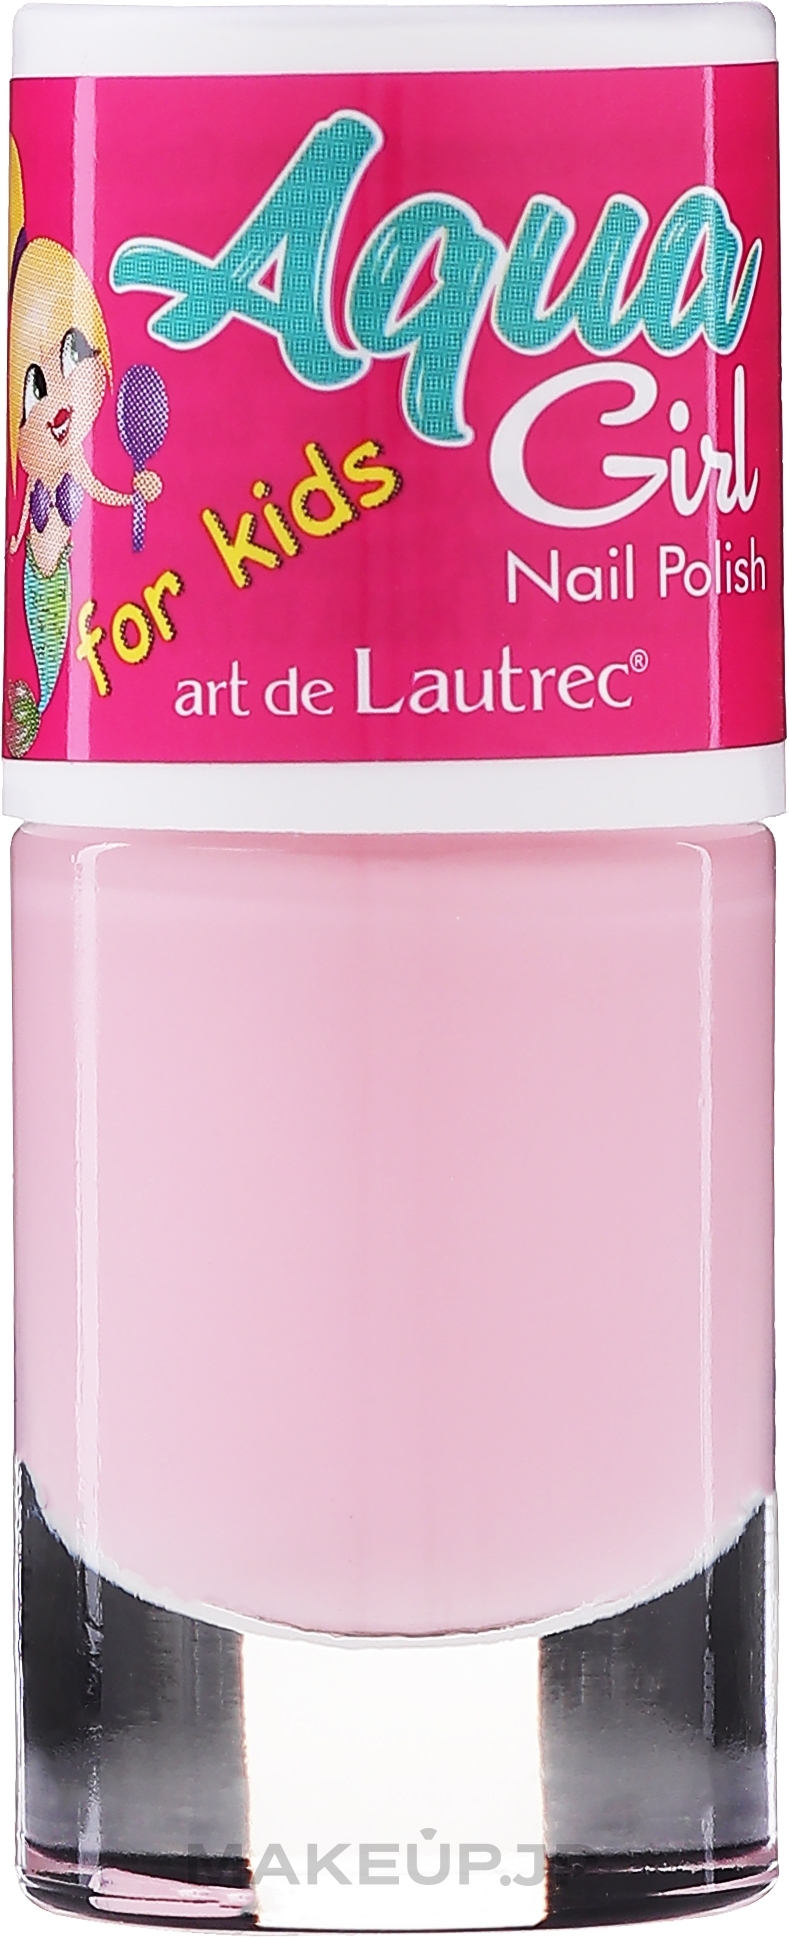 Nail Polish - Art de Lautrec Aqua Girl — photo 01